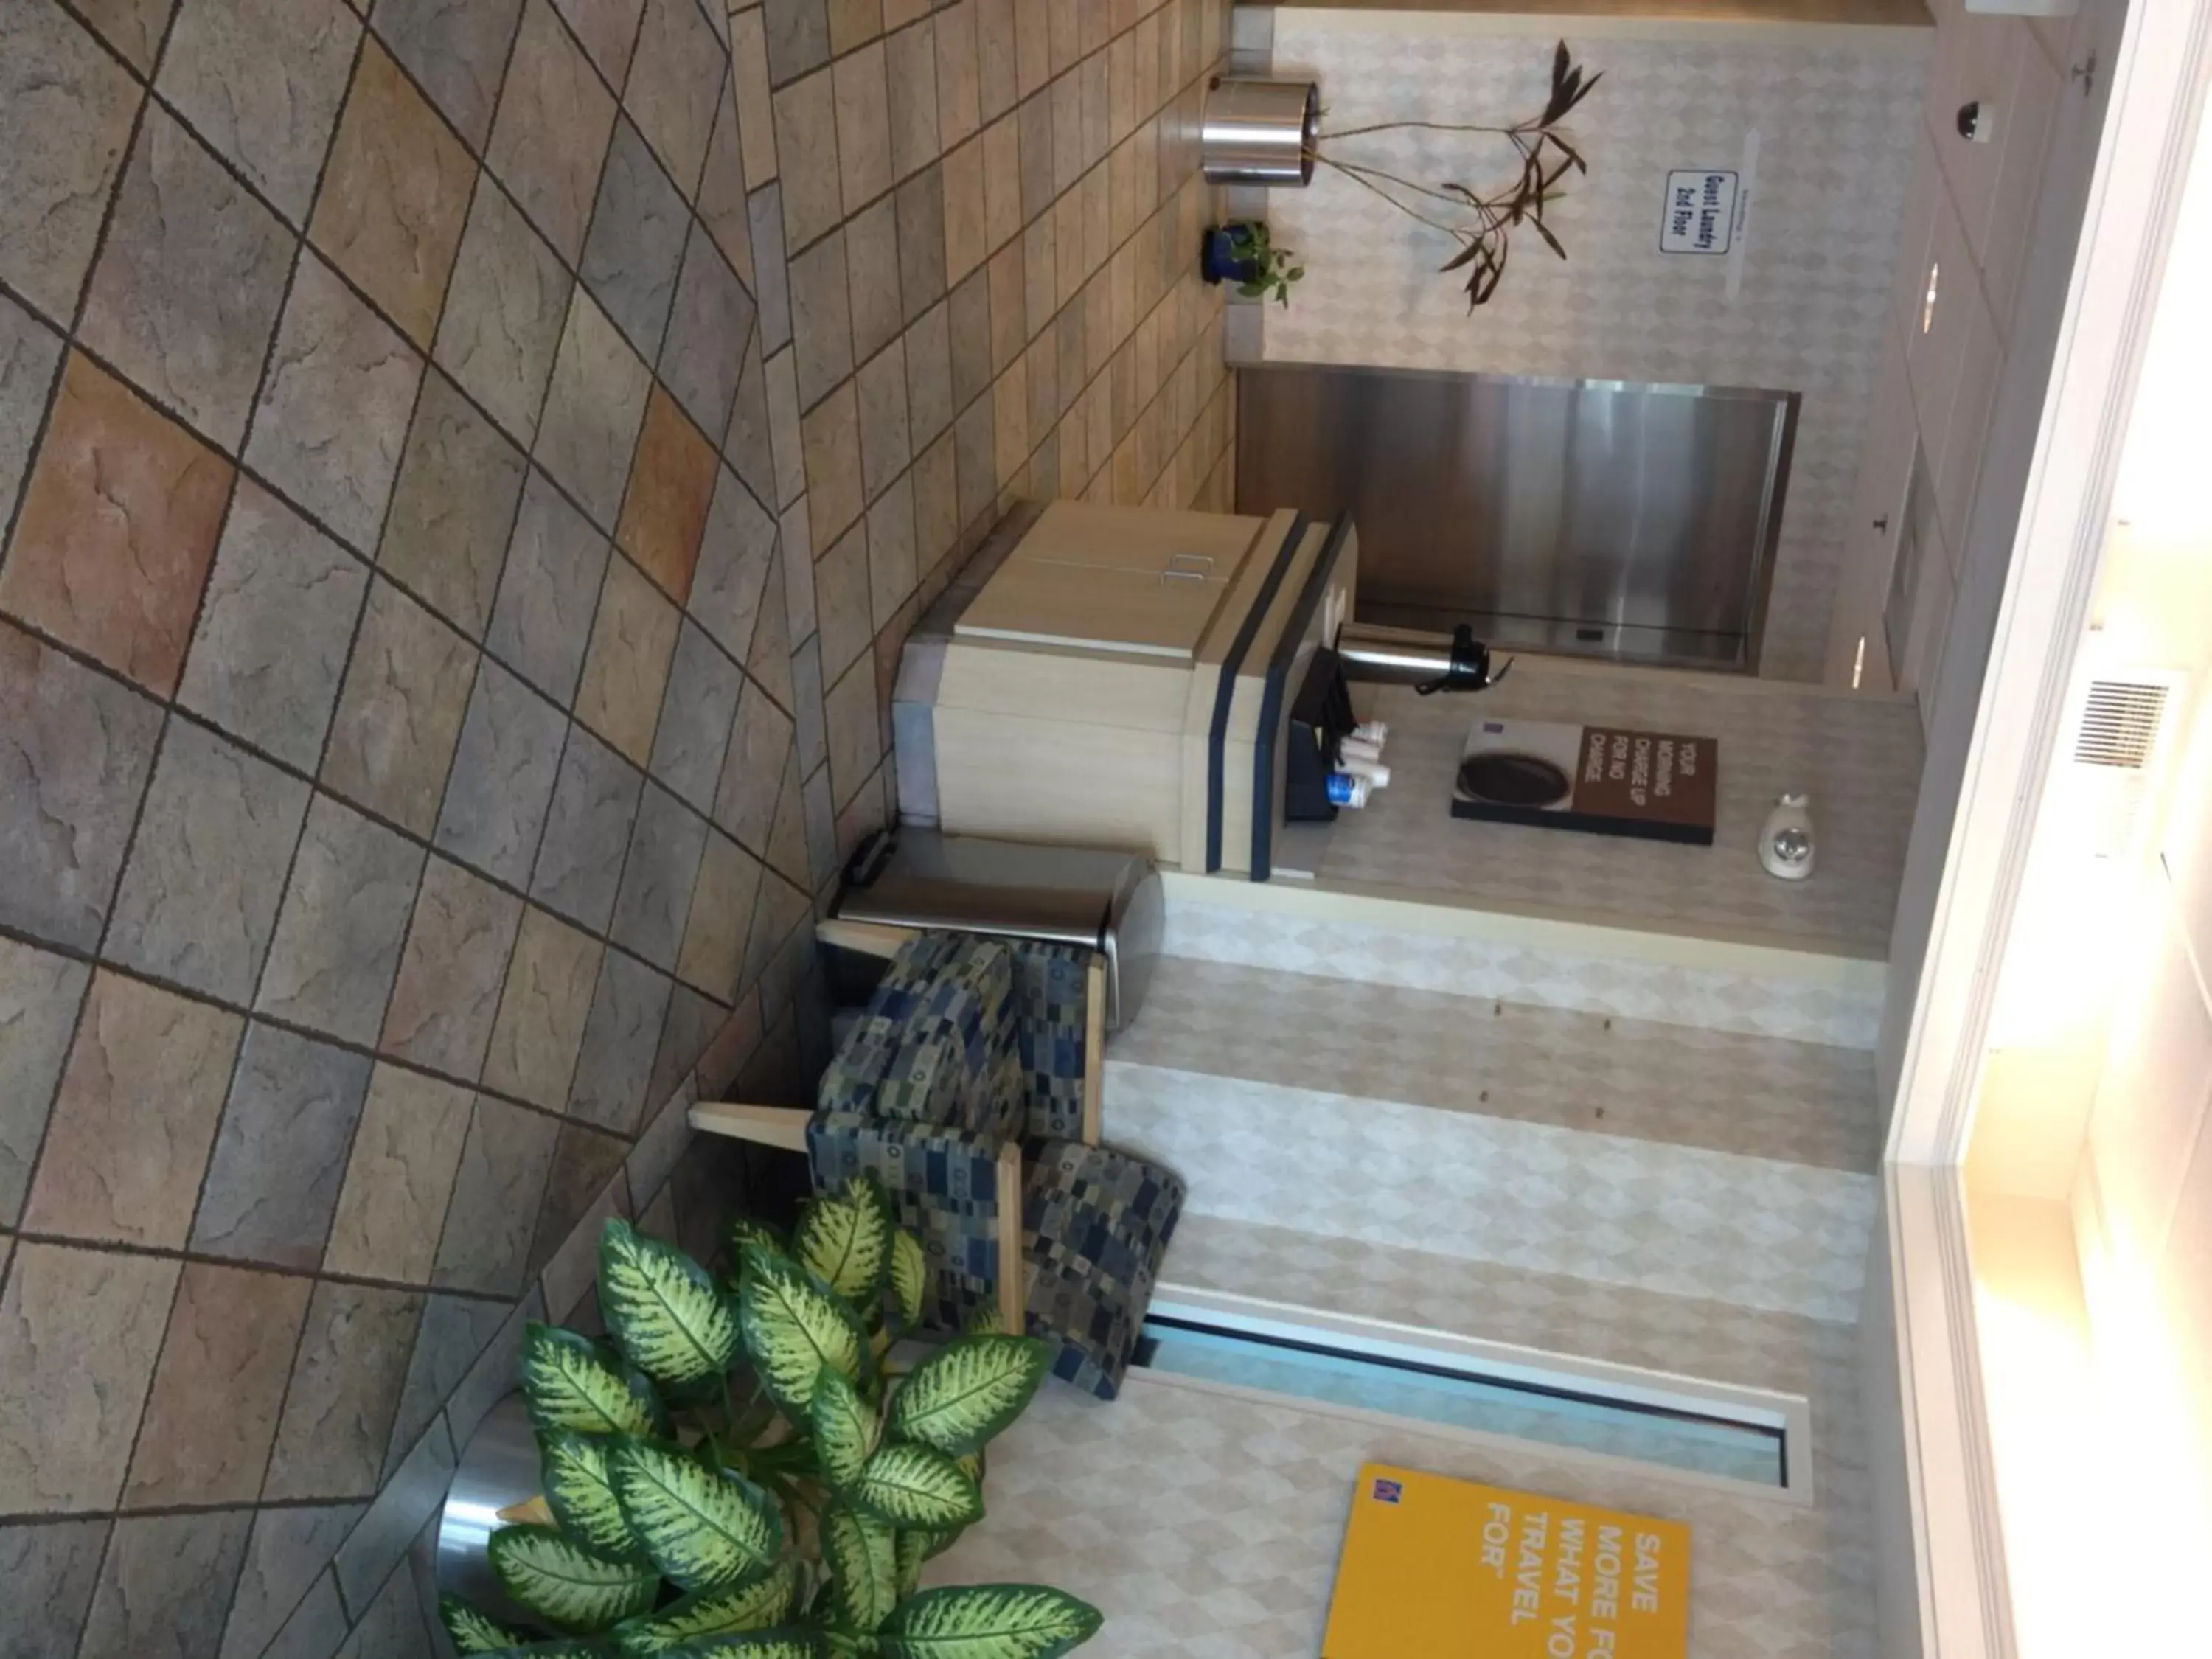 Coffee/tea facilities, Lobby/Reception in Motel 6-Montgomery, AL - Airport